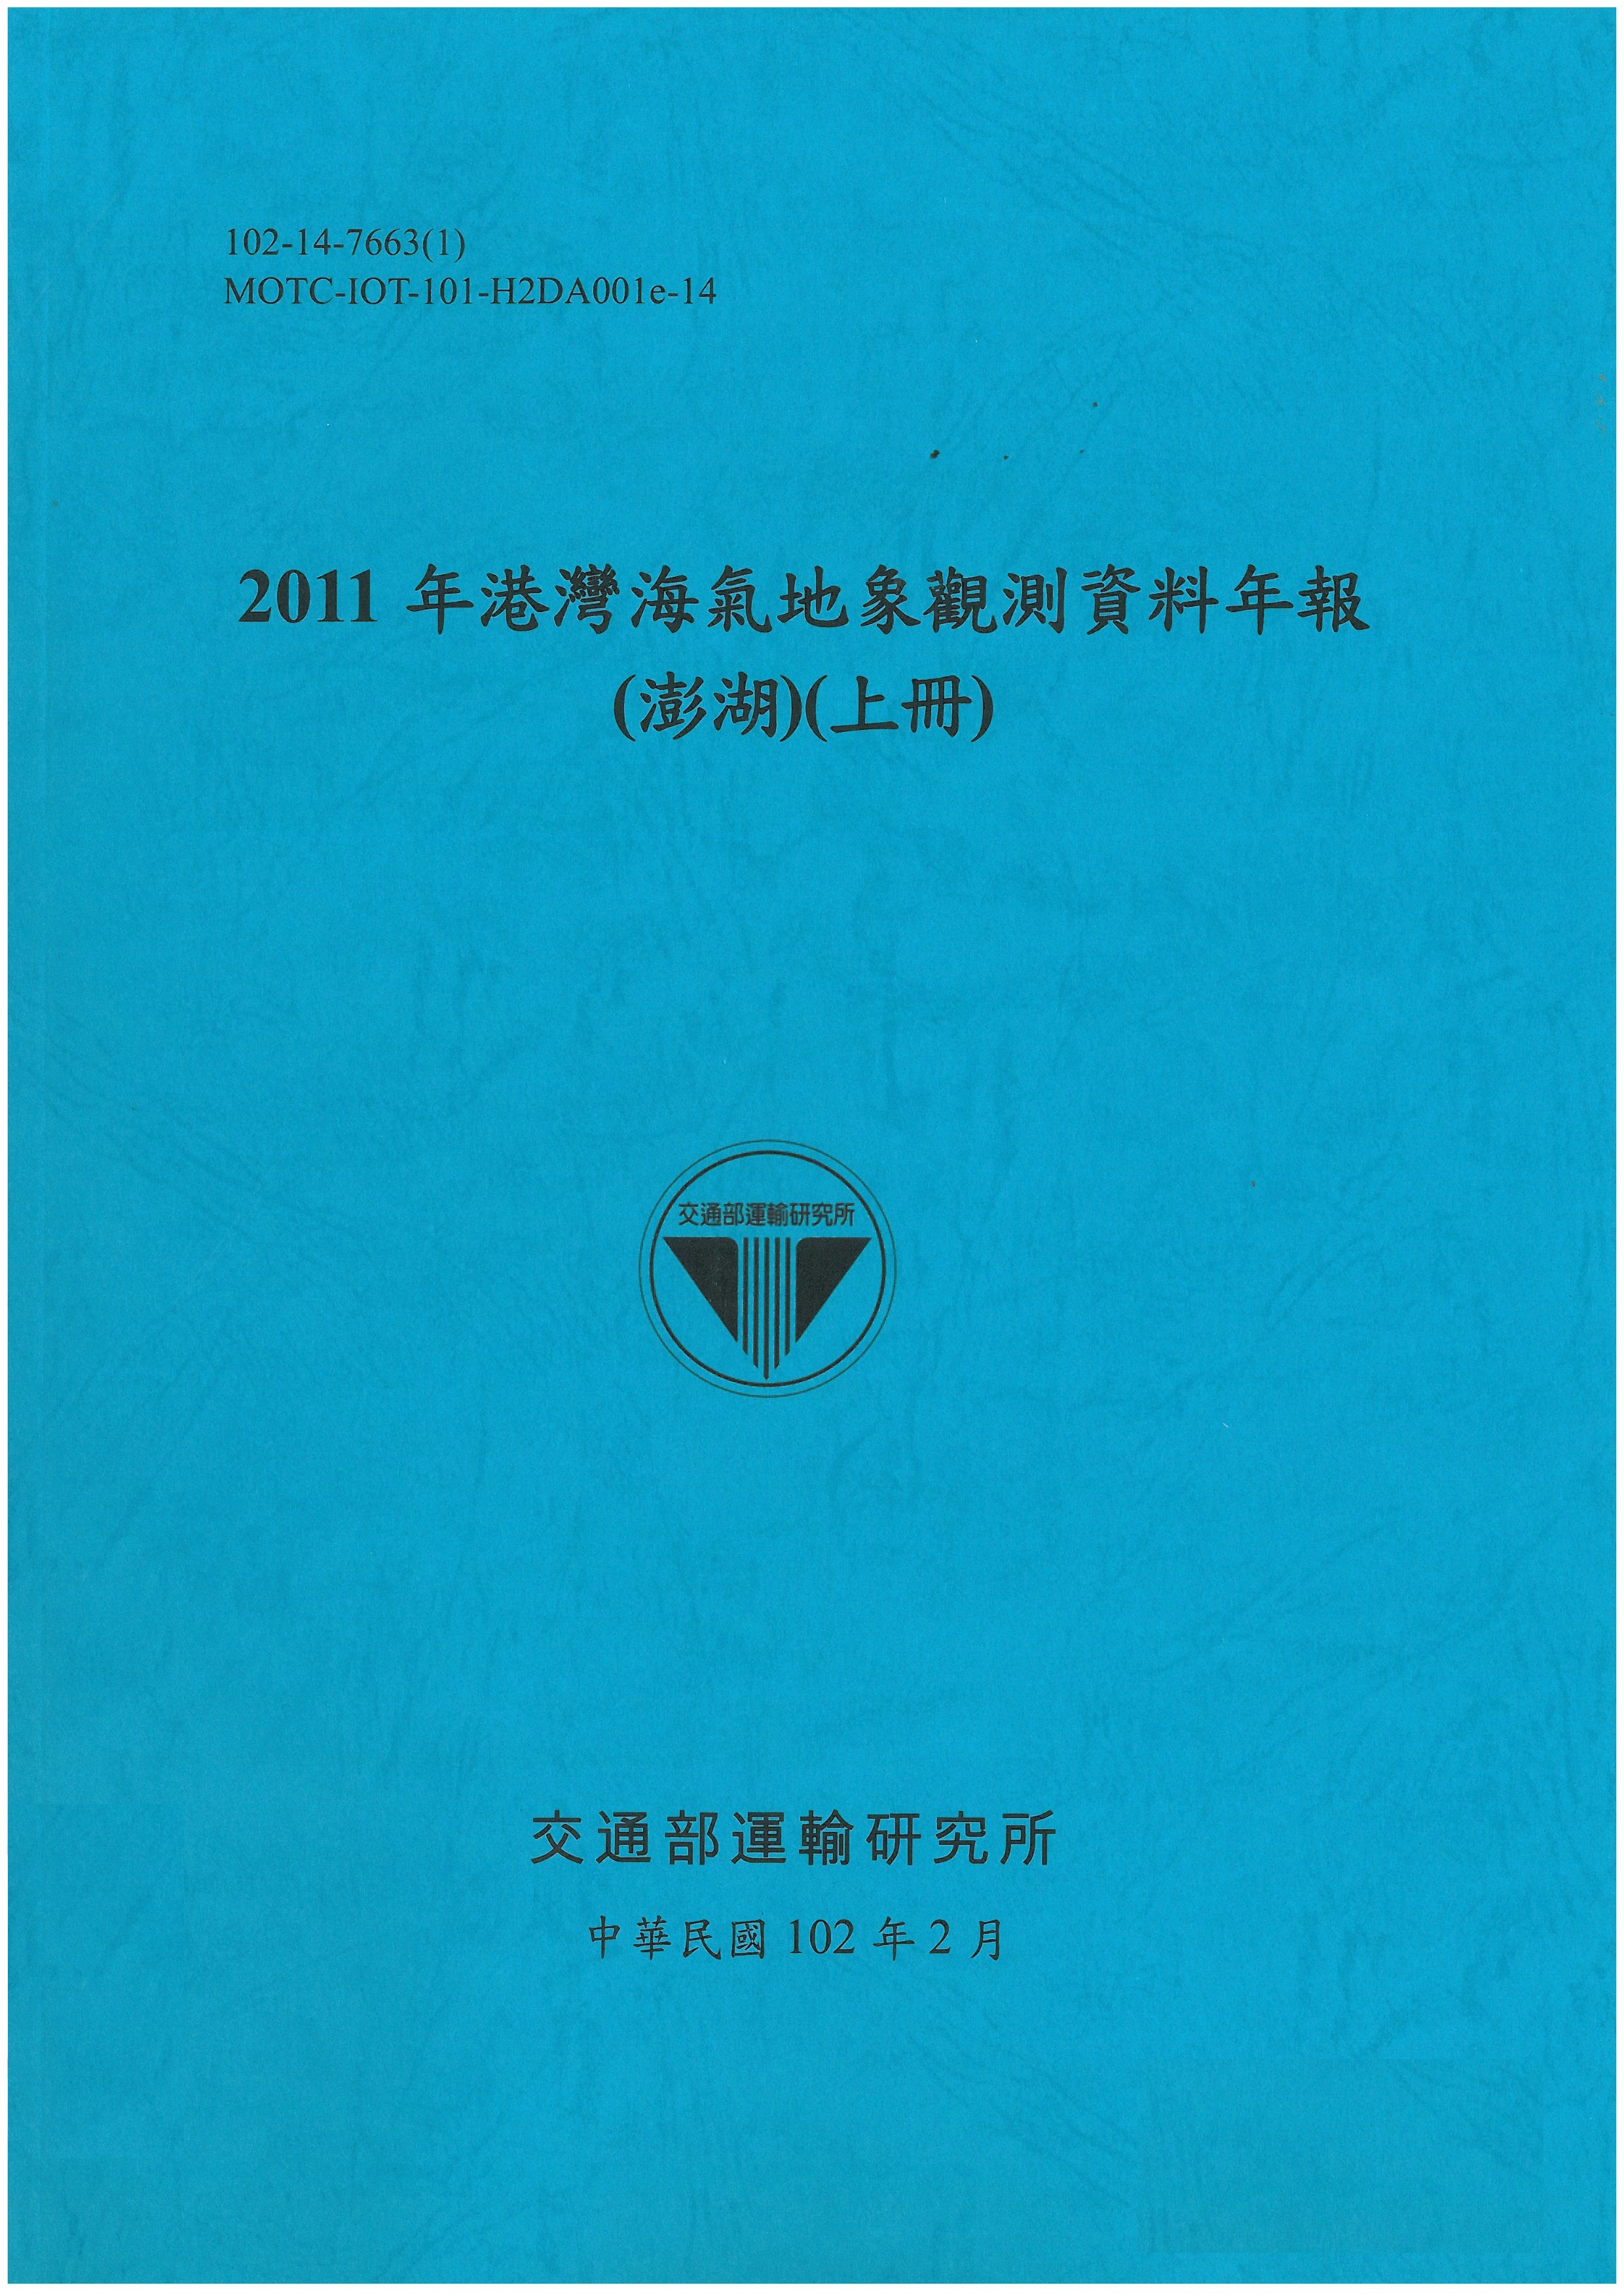 2011年港灣海氣地象觀測資料年報(澎湖)(上冊)